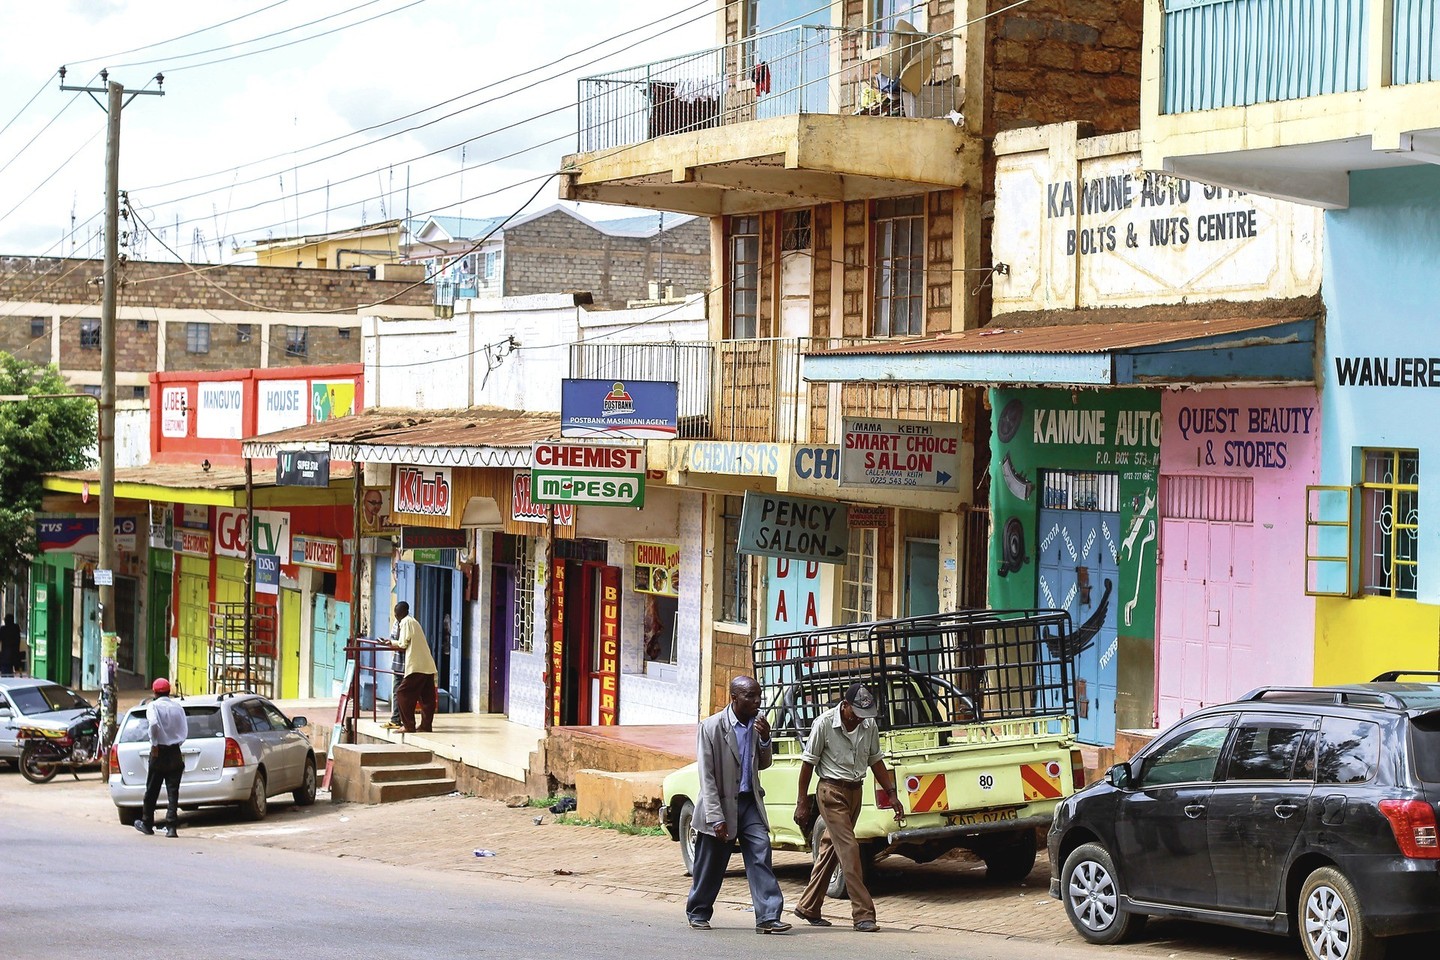 Taip atrodo tipiškos Kenijos miesto gatvės, esančios toliau nuo centro.<br>G.Stravinskaitės nuotr.